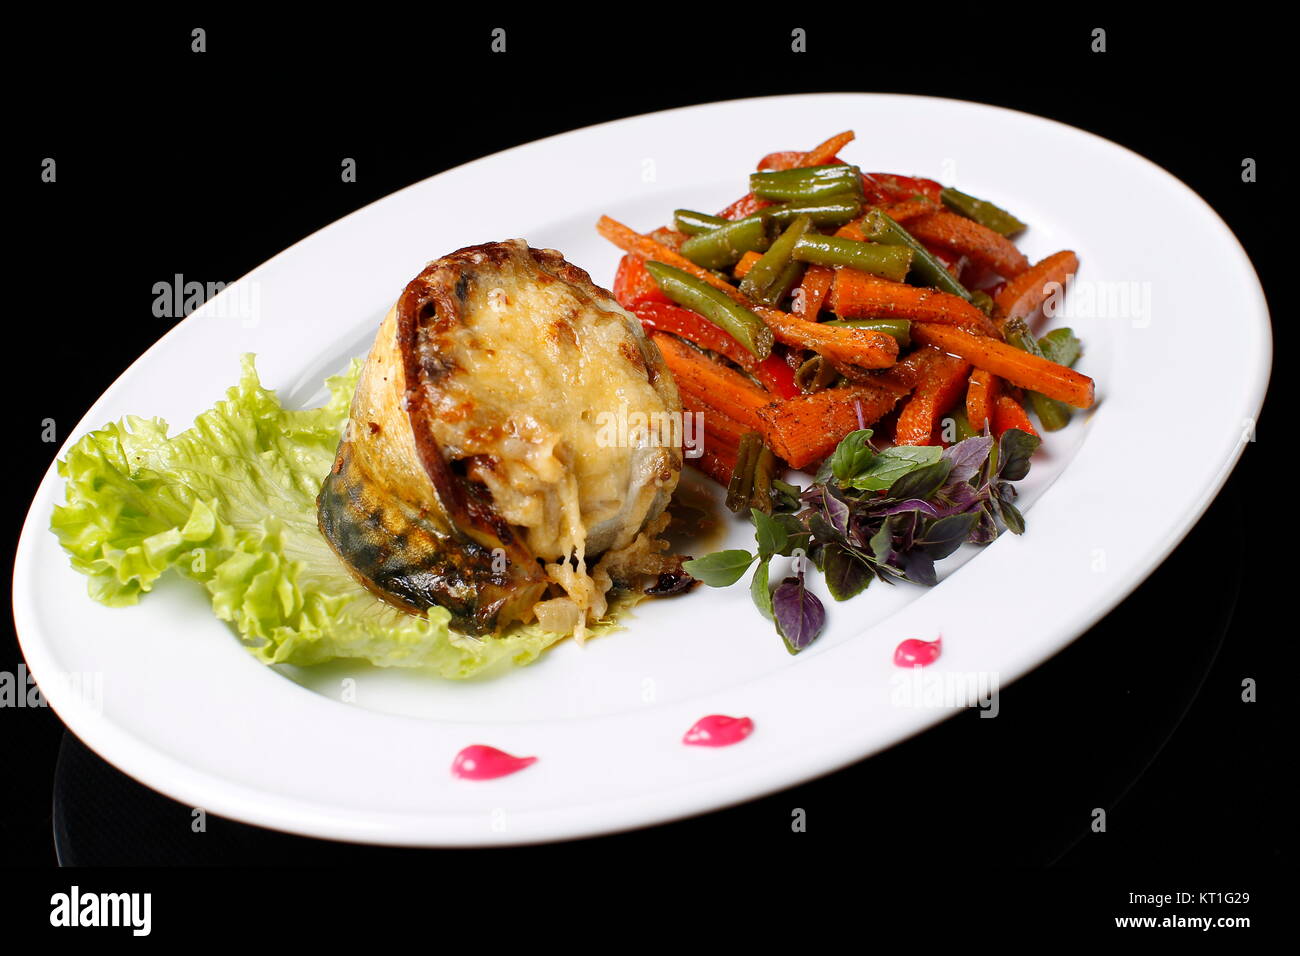 Auf einem weißen Teller Fisch frittierte Makrele in Käse, gekochtes Gemüse. Grüne Bohnen, Möhren, Basilikum, Salat., auf einem schwarzen Hintergrund. Gebratene Makrele Stockfoto